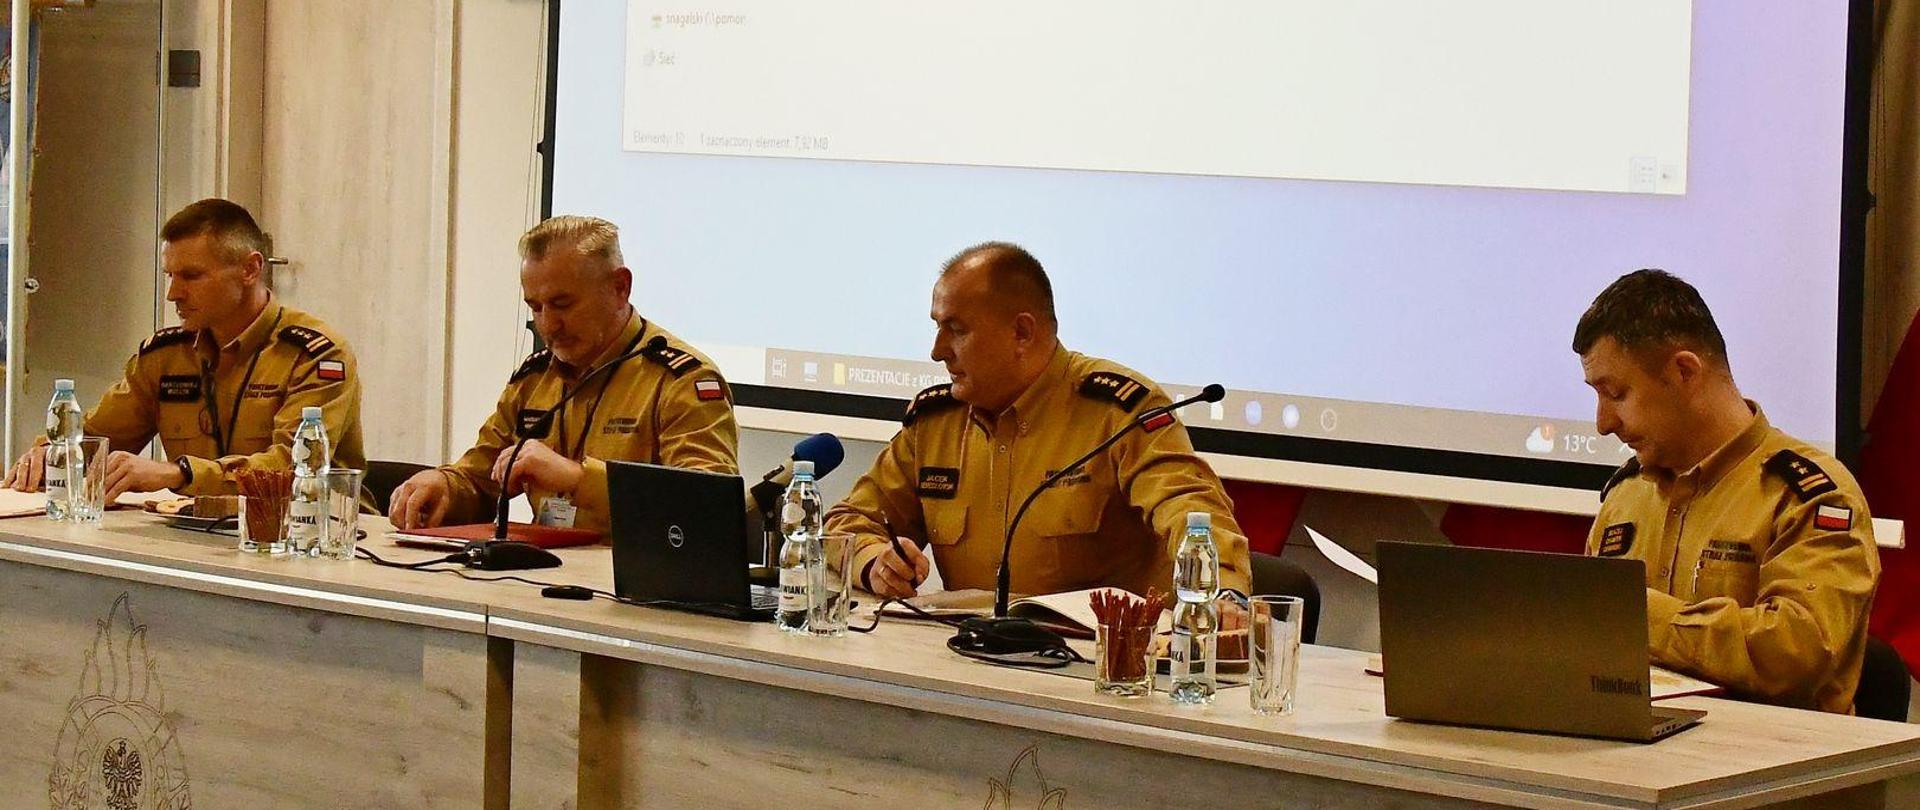 Trzech strażaków w mundurach koloru musztardowego siedzi za biurkami na których są laptopy paluszki woda oraz mikrofony na ekranie wyświetlana jest prezentacja.